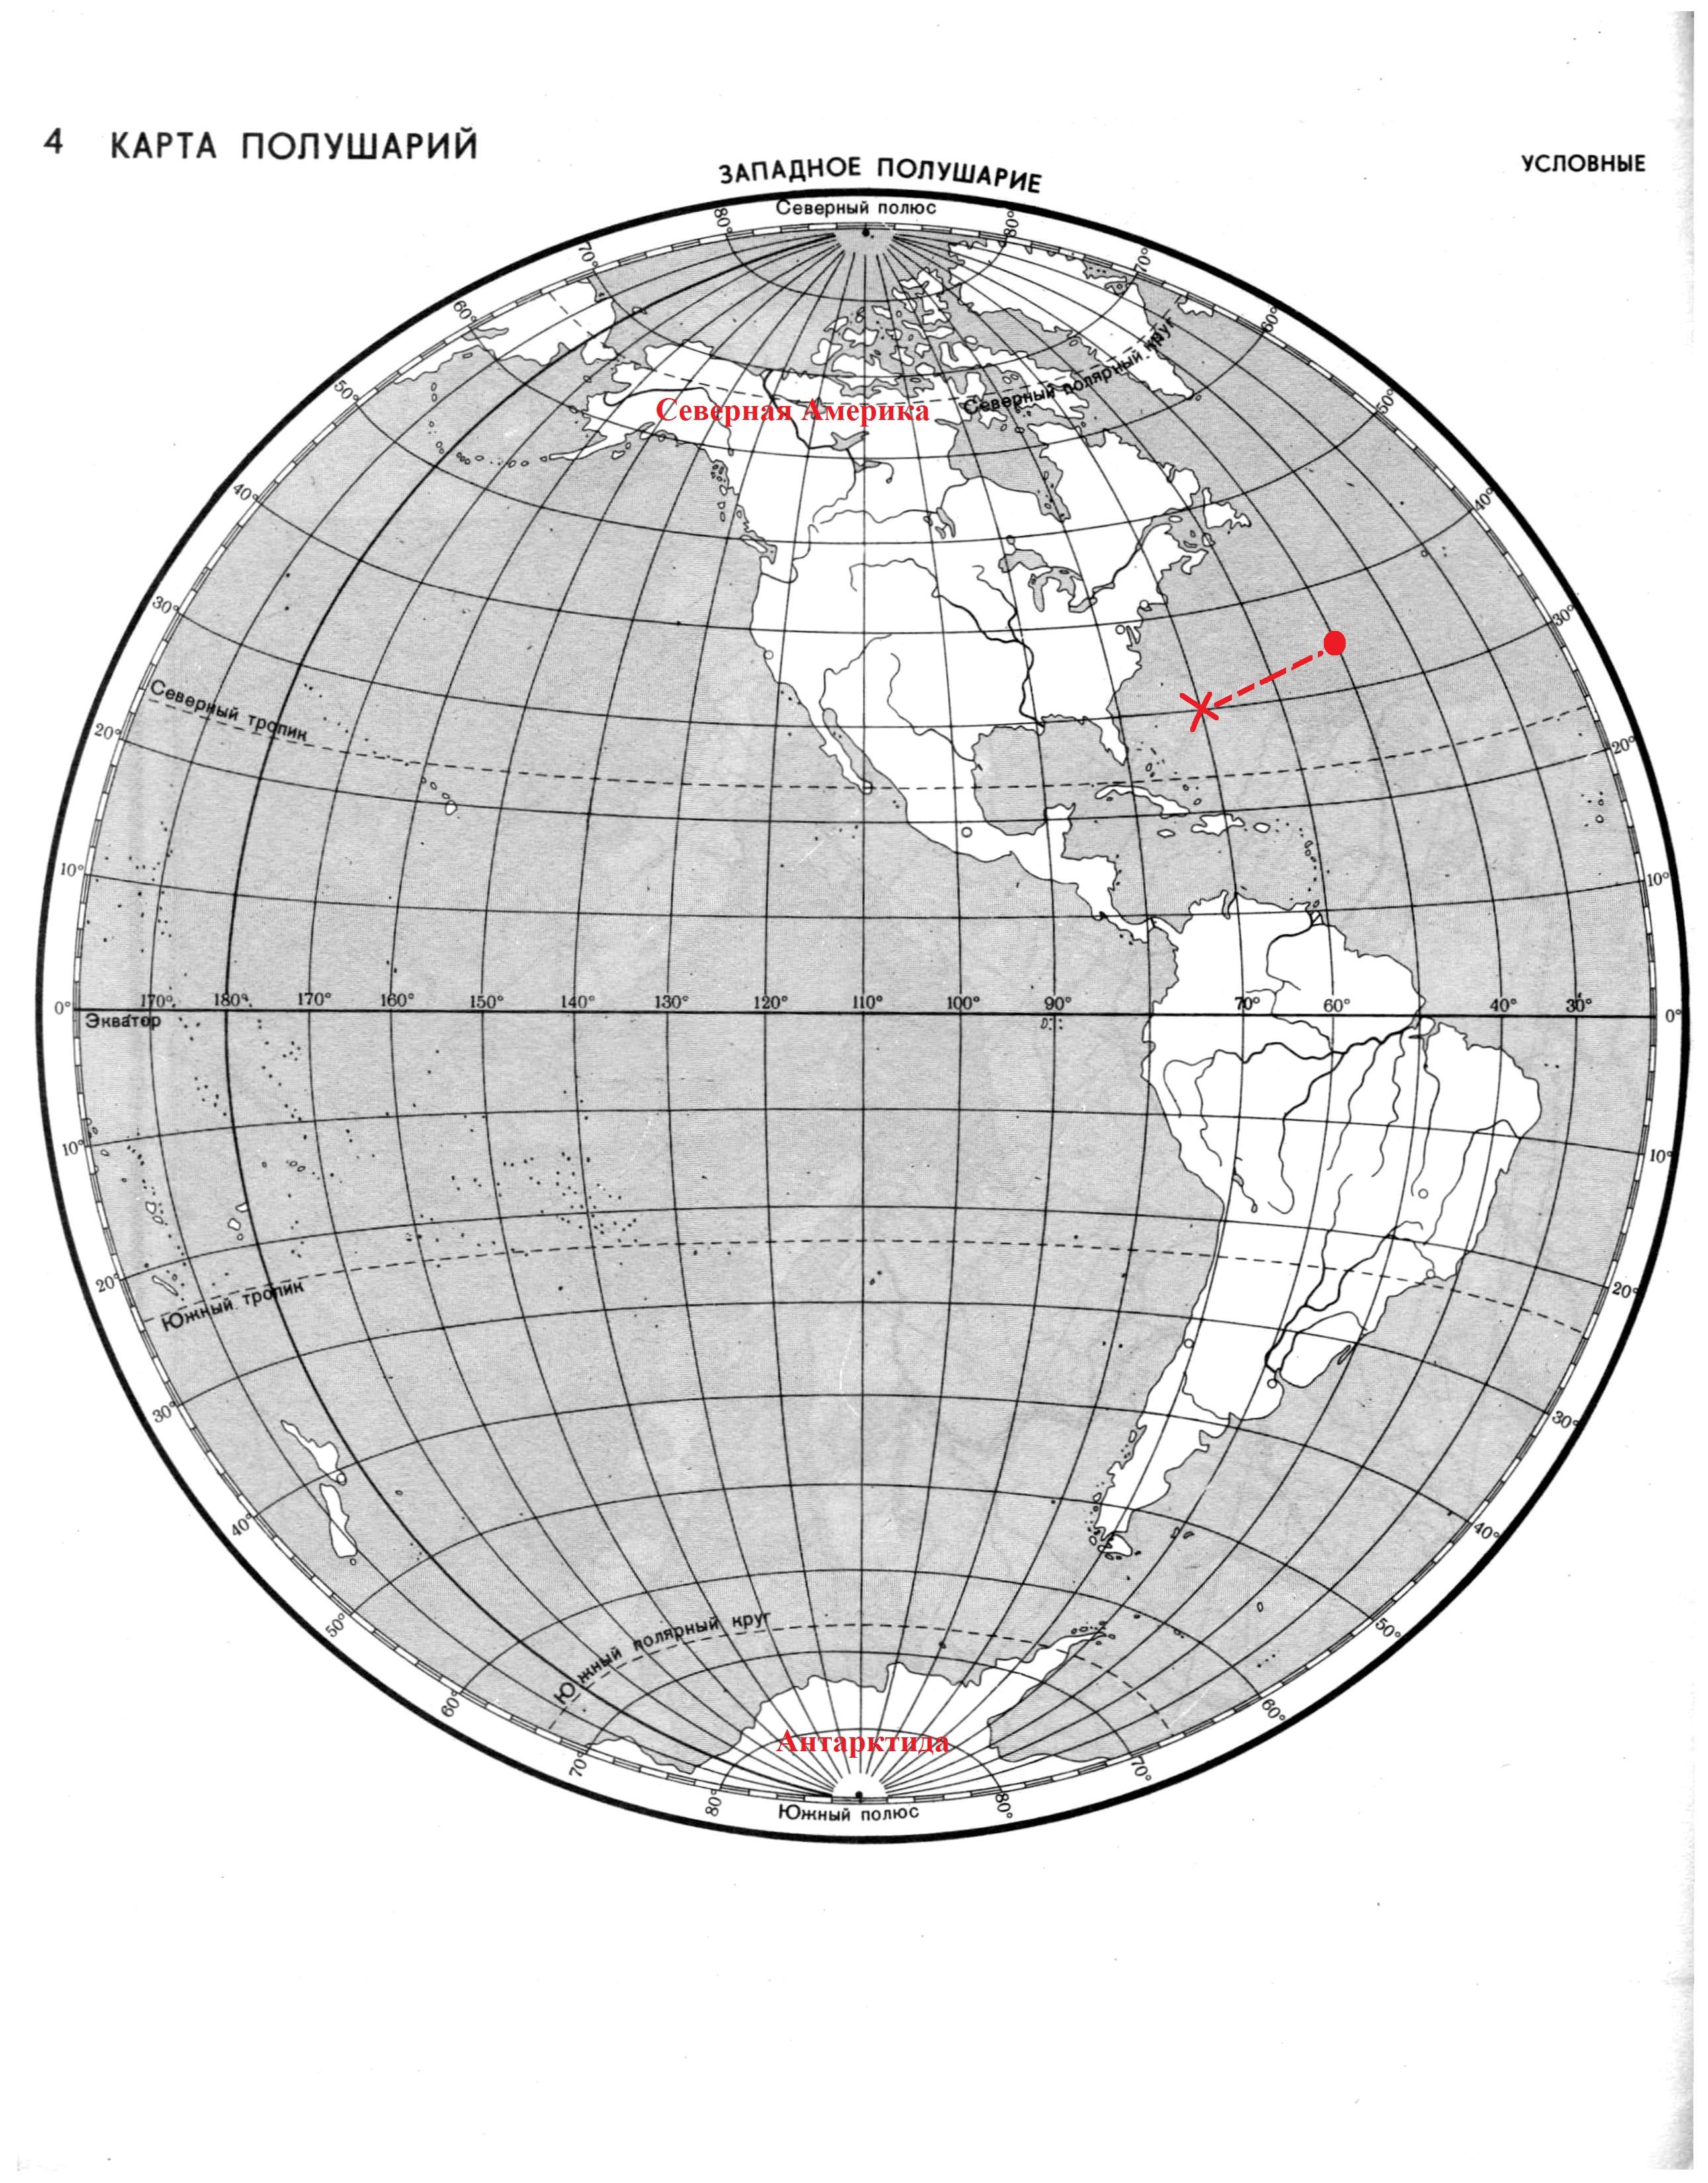 Рисунок контурной карты полушарий